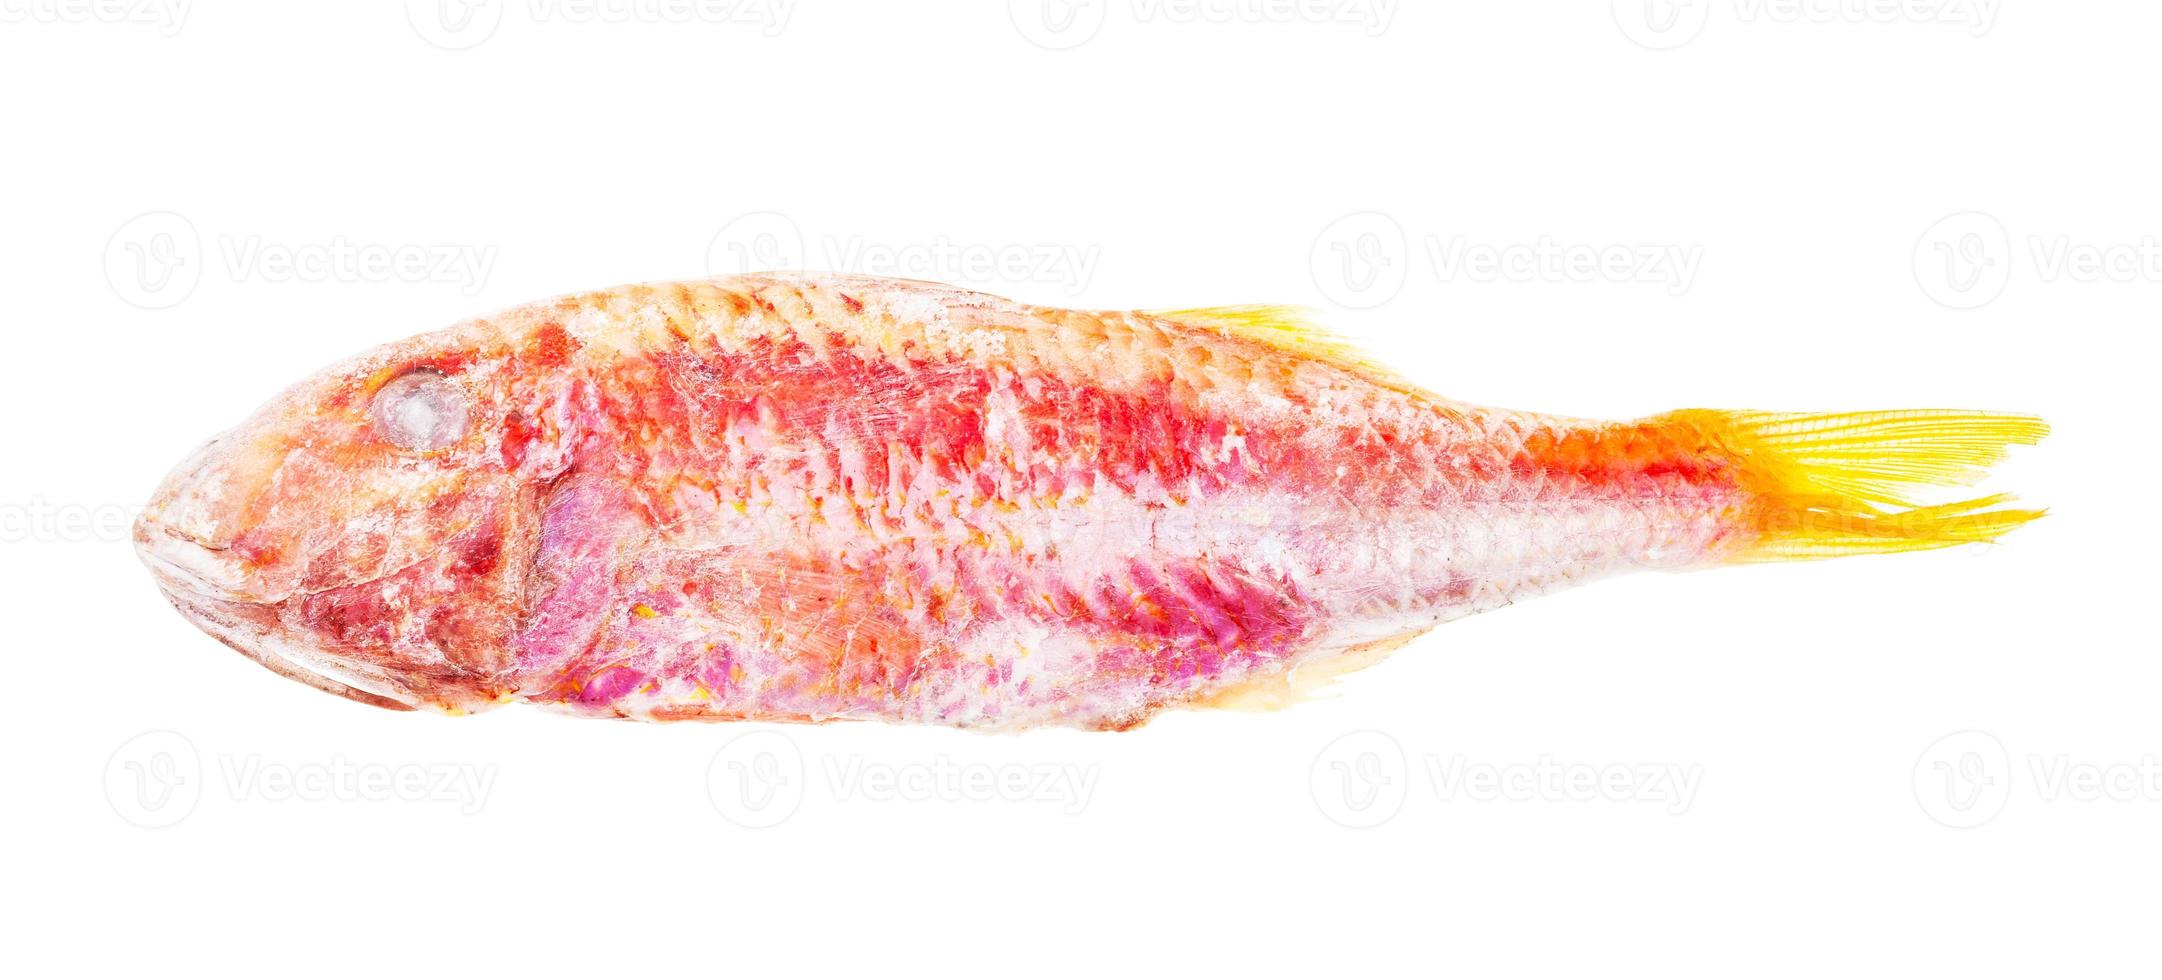 Pescado de salmonete ultracongelado aislado en blanco foto